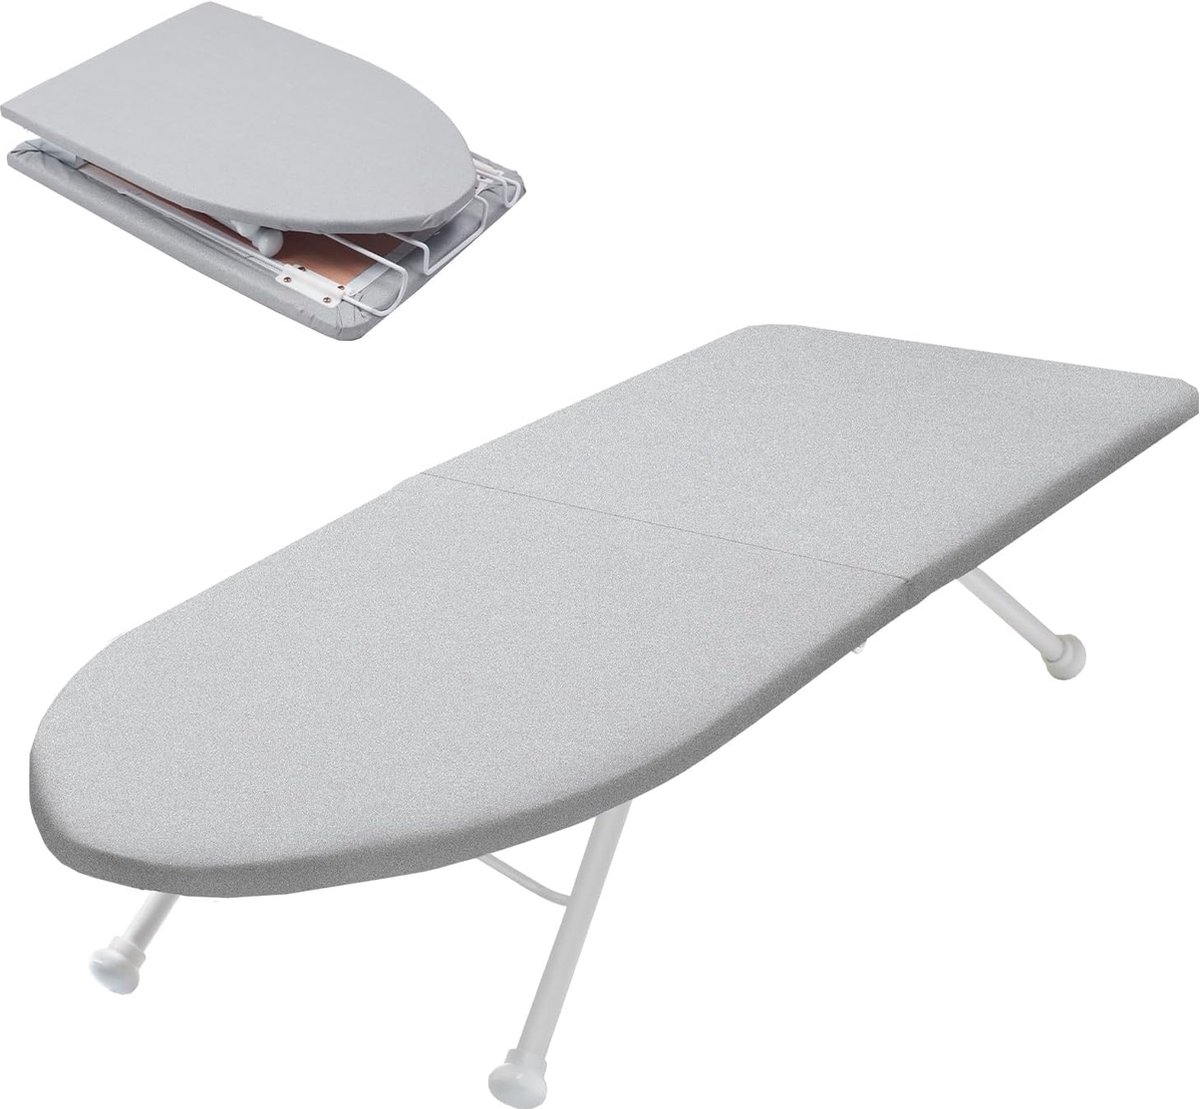 Strijkplank, inklapbare tafelstrijkplank, kleine strijkplank, opvouwbaar met klapfunctie, ruimtebesparend, mini-opvouwbaar strijkbord met antislipvoet voor thuisgebruik, 98 x 31 cm, grijs